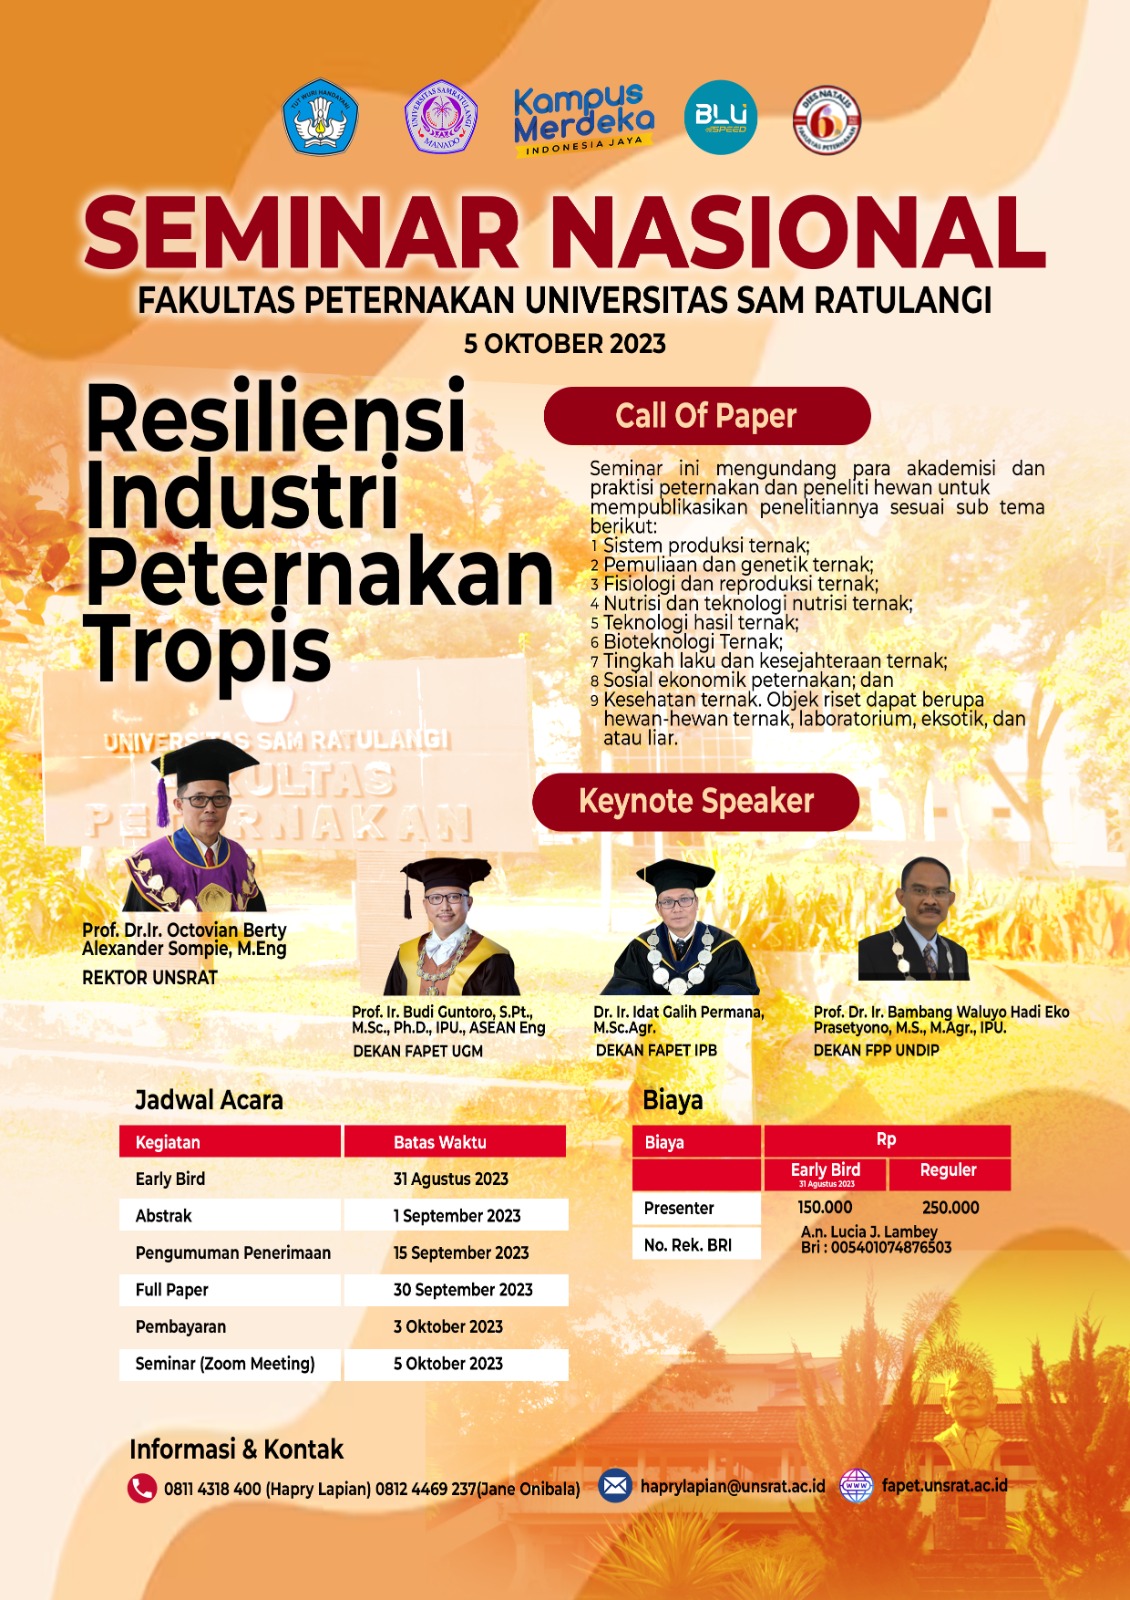 Seminar Nasional Fakultas Peternakan Unsrat “Resiliensi Industri Peternakan Tropis”